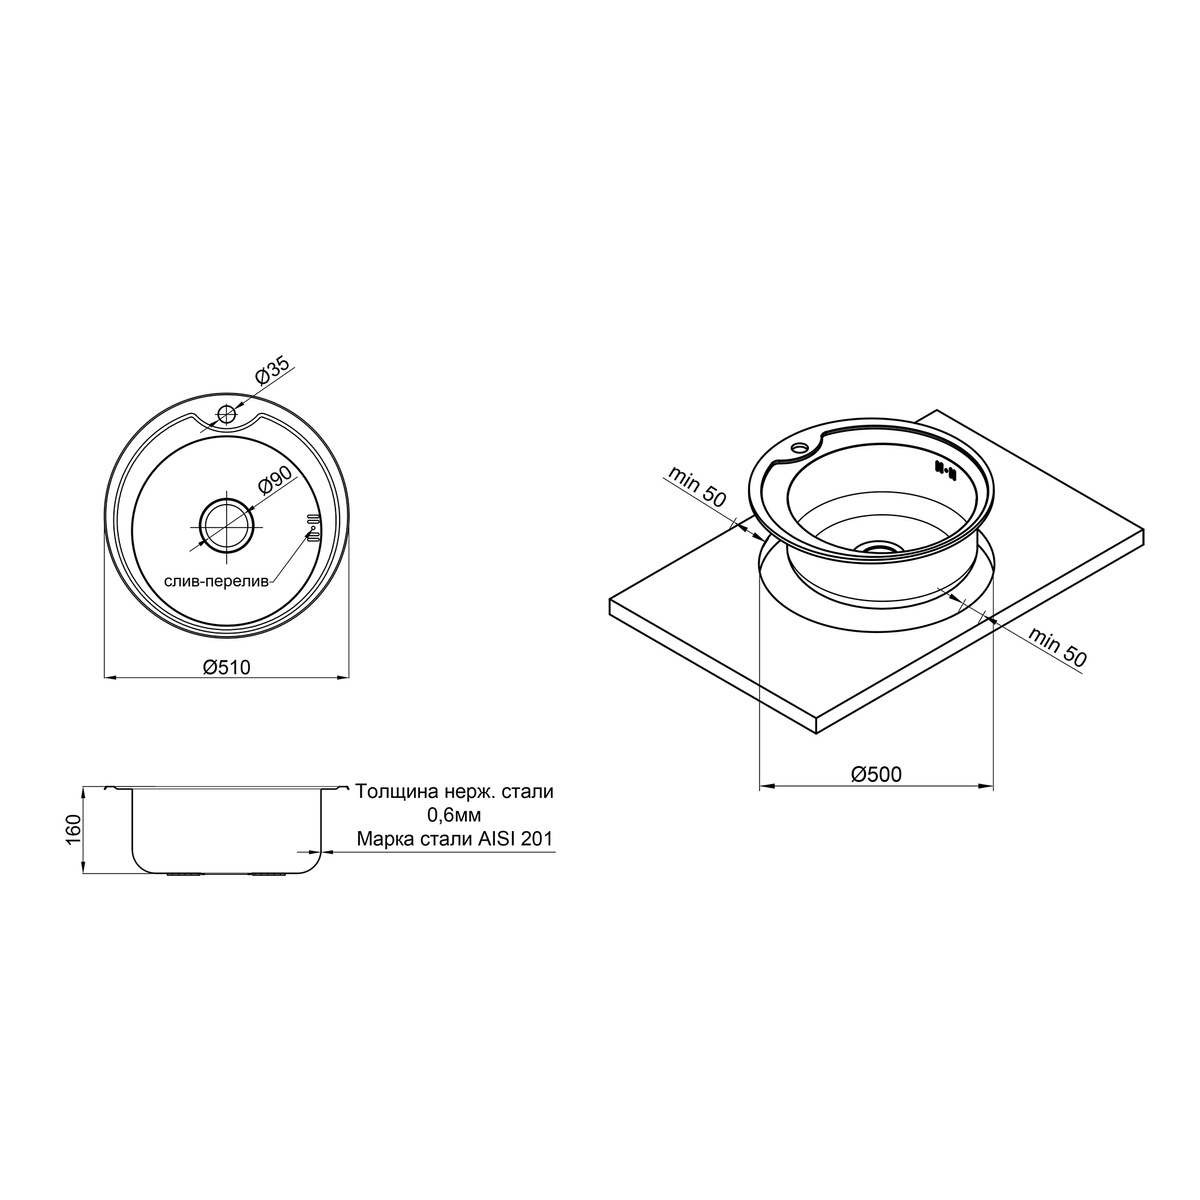 Мийка для кухні із нержавіючої сталі кругла LIDZ 510x510x160мм мікротекстура 0.6мм із сифоном LIDZ510D06MD160